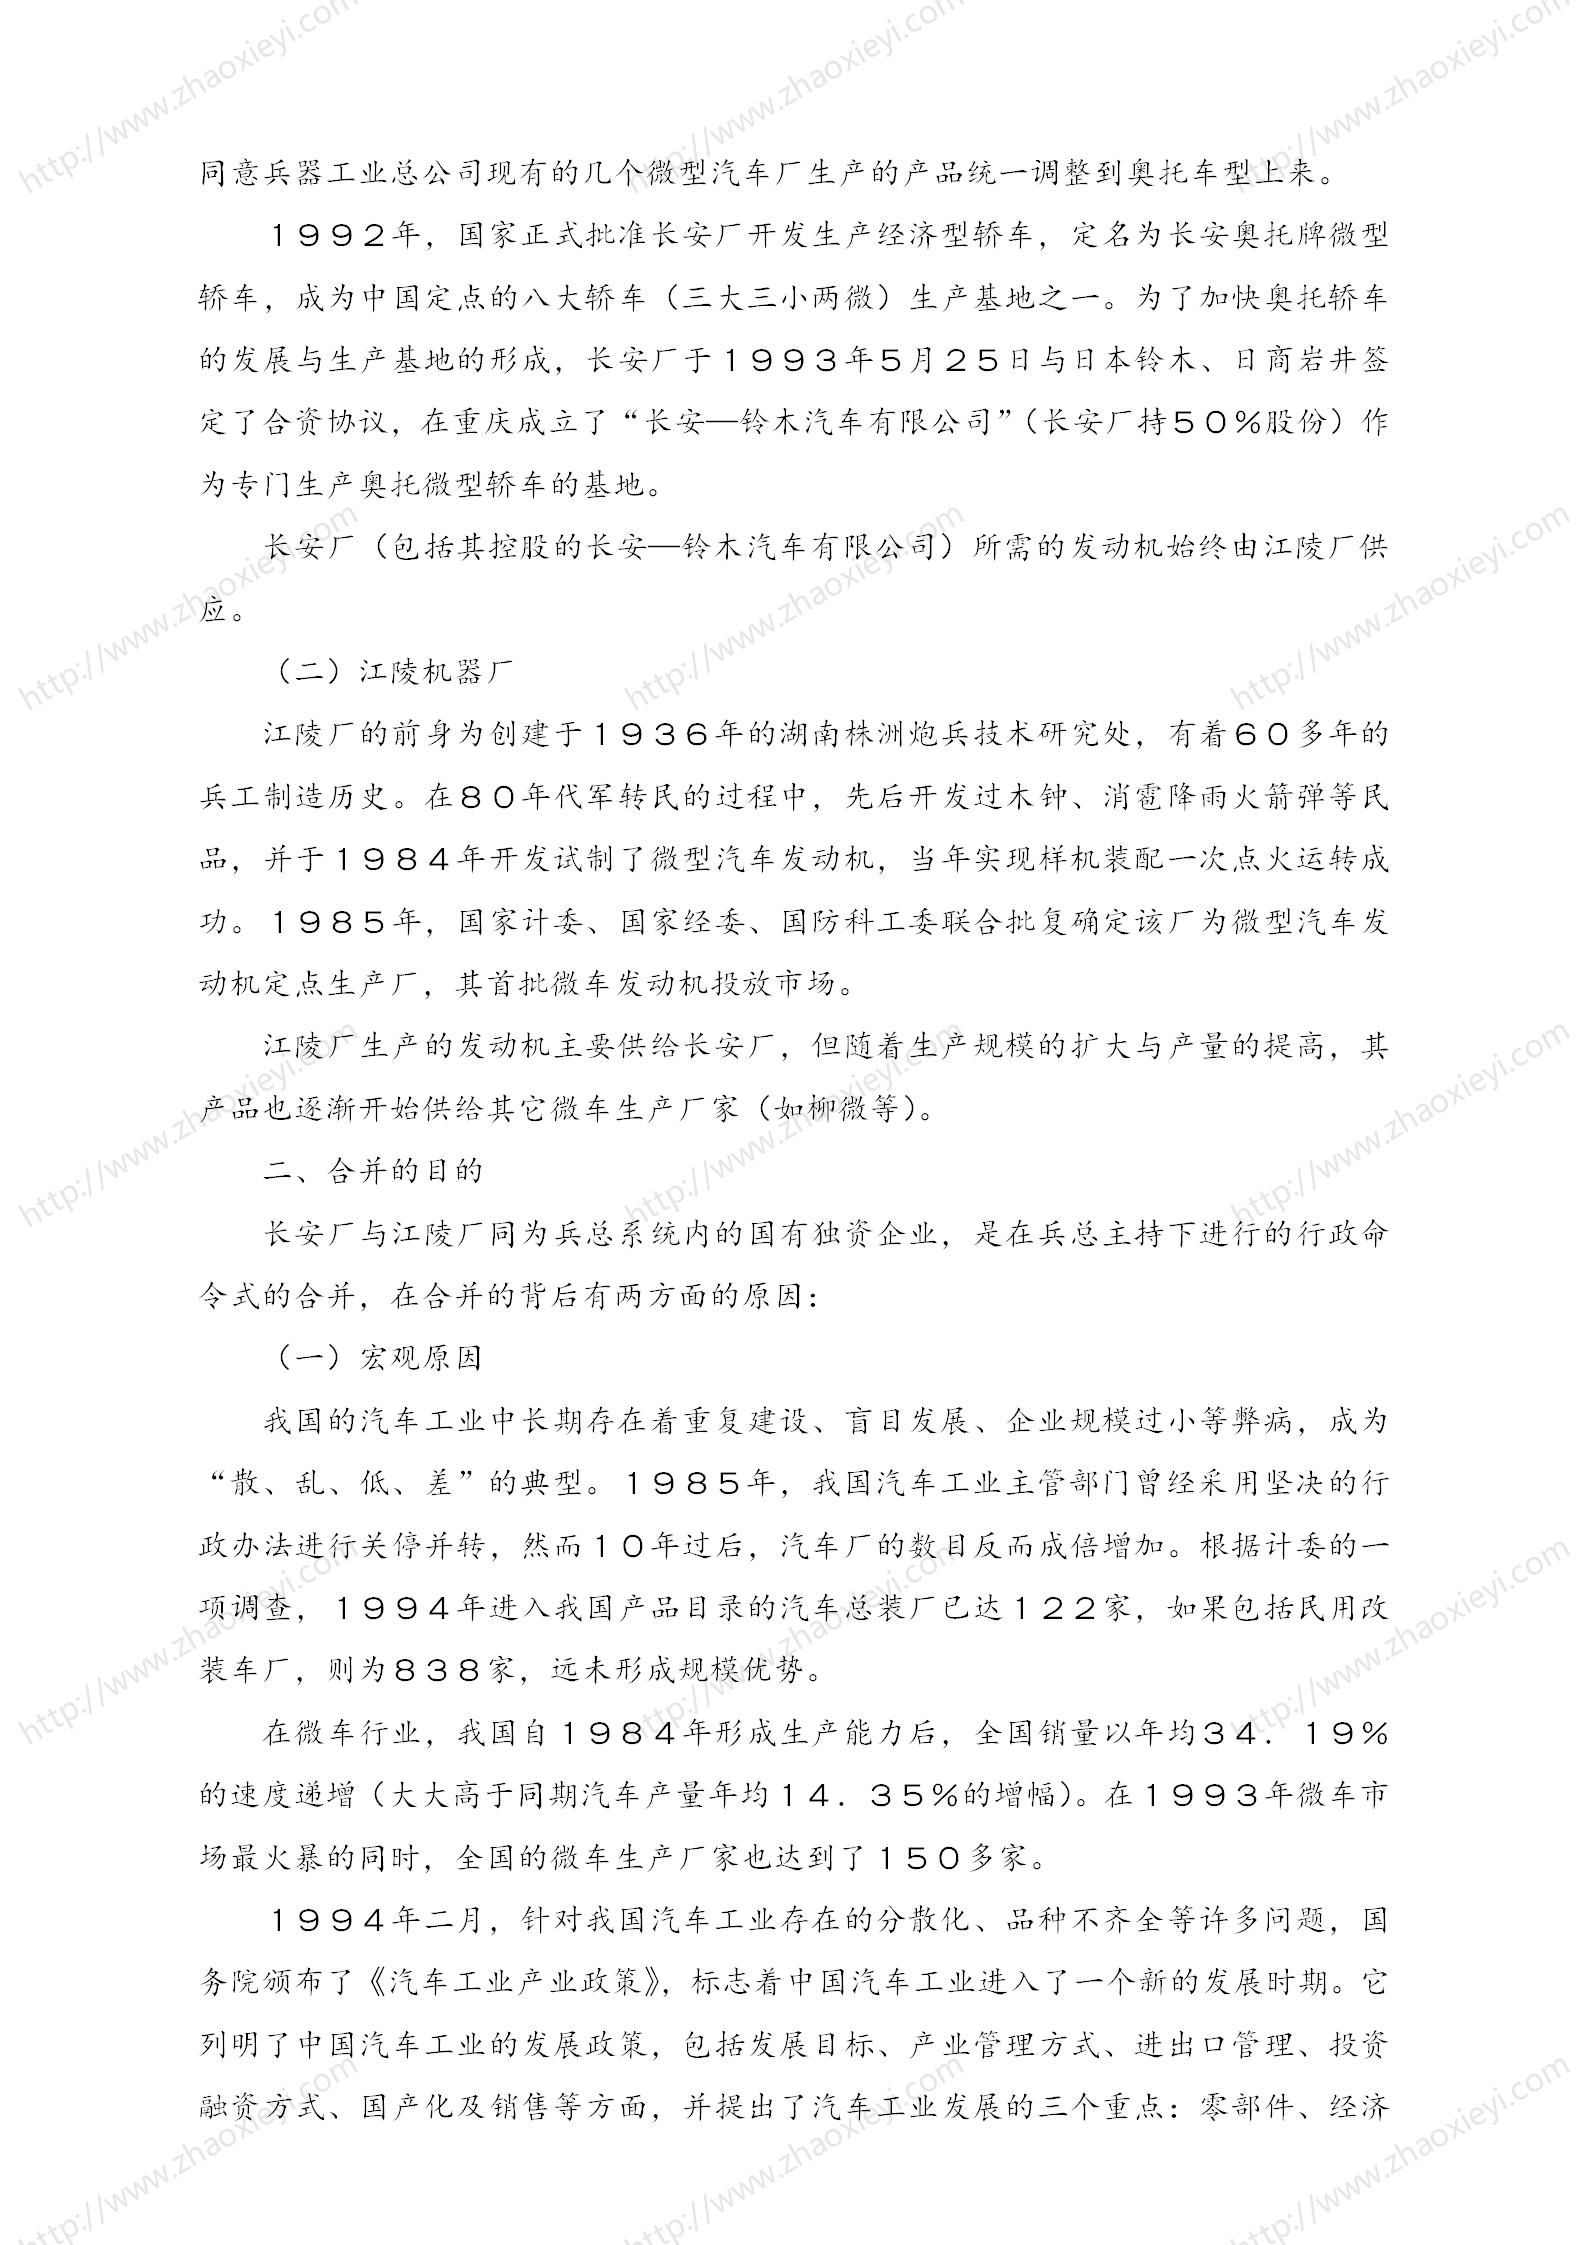 中国企业并购经典案例_143.jpg